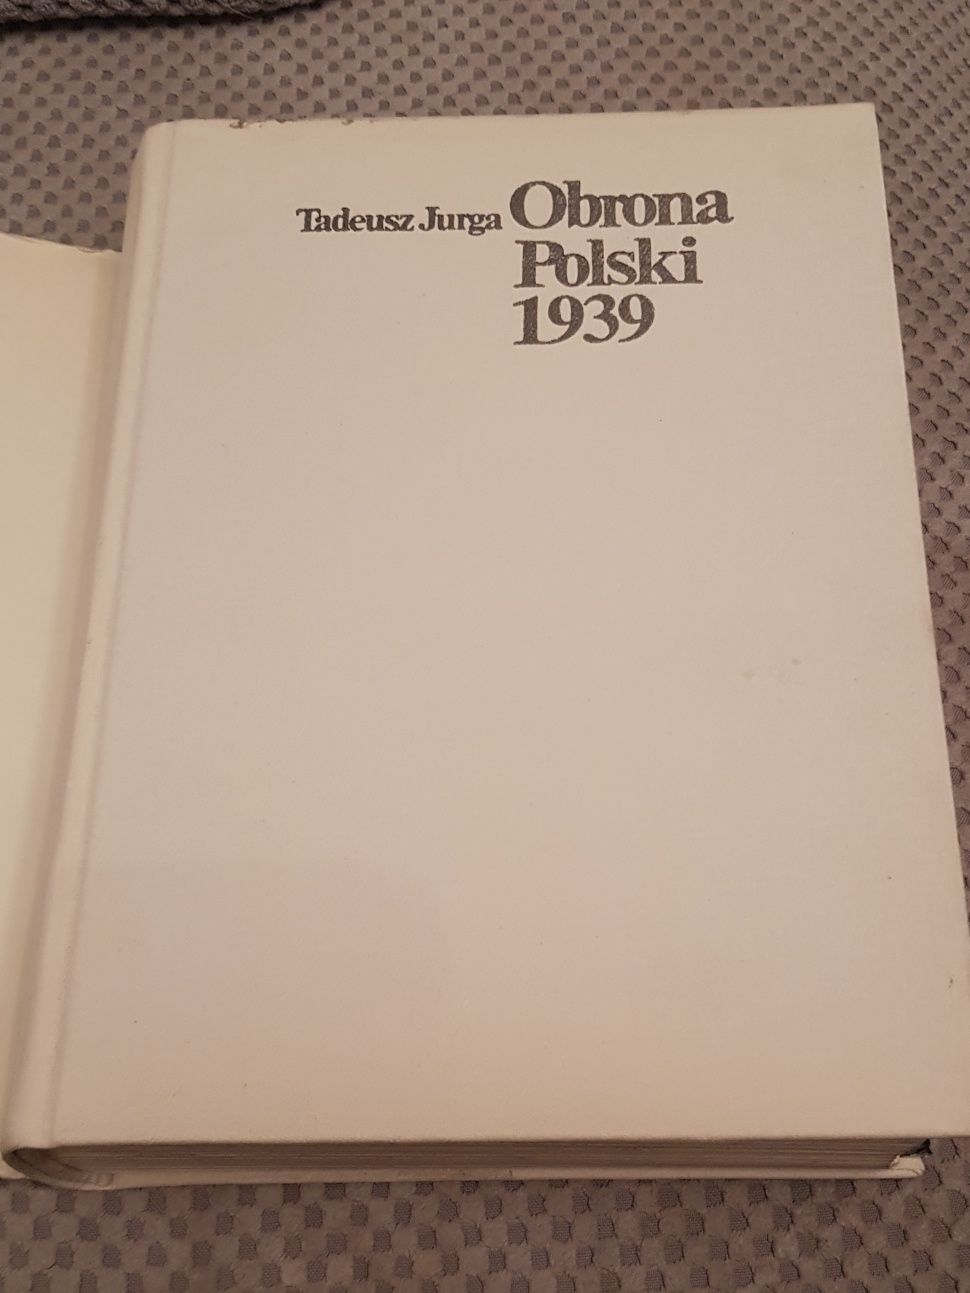 Tadeusz Jurga. Obrona Polski 1939.